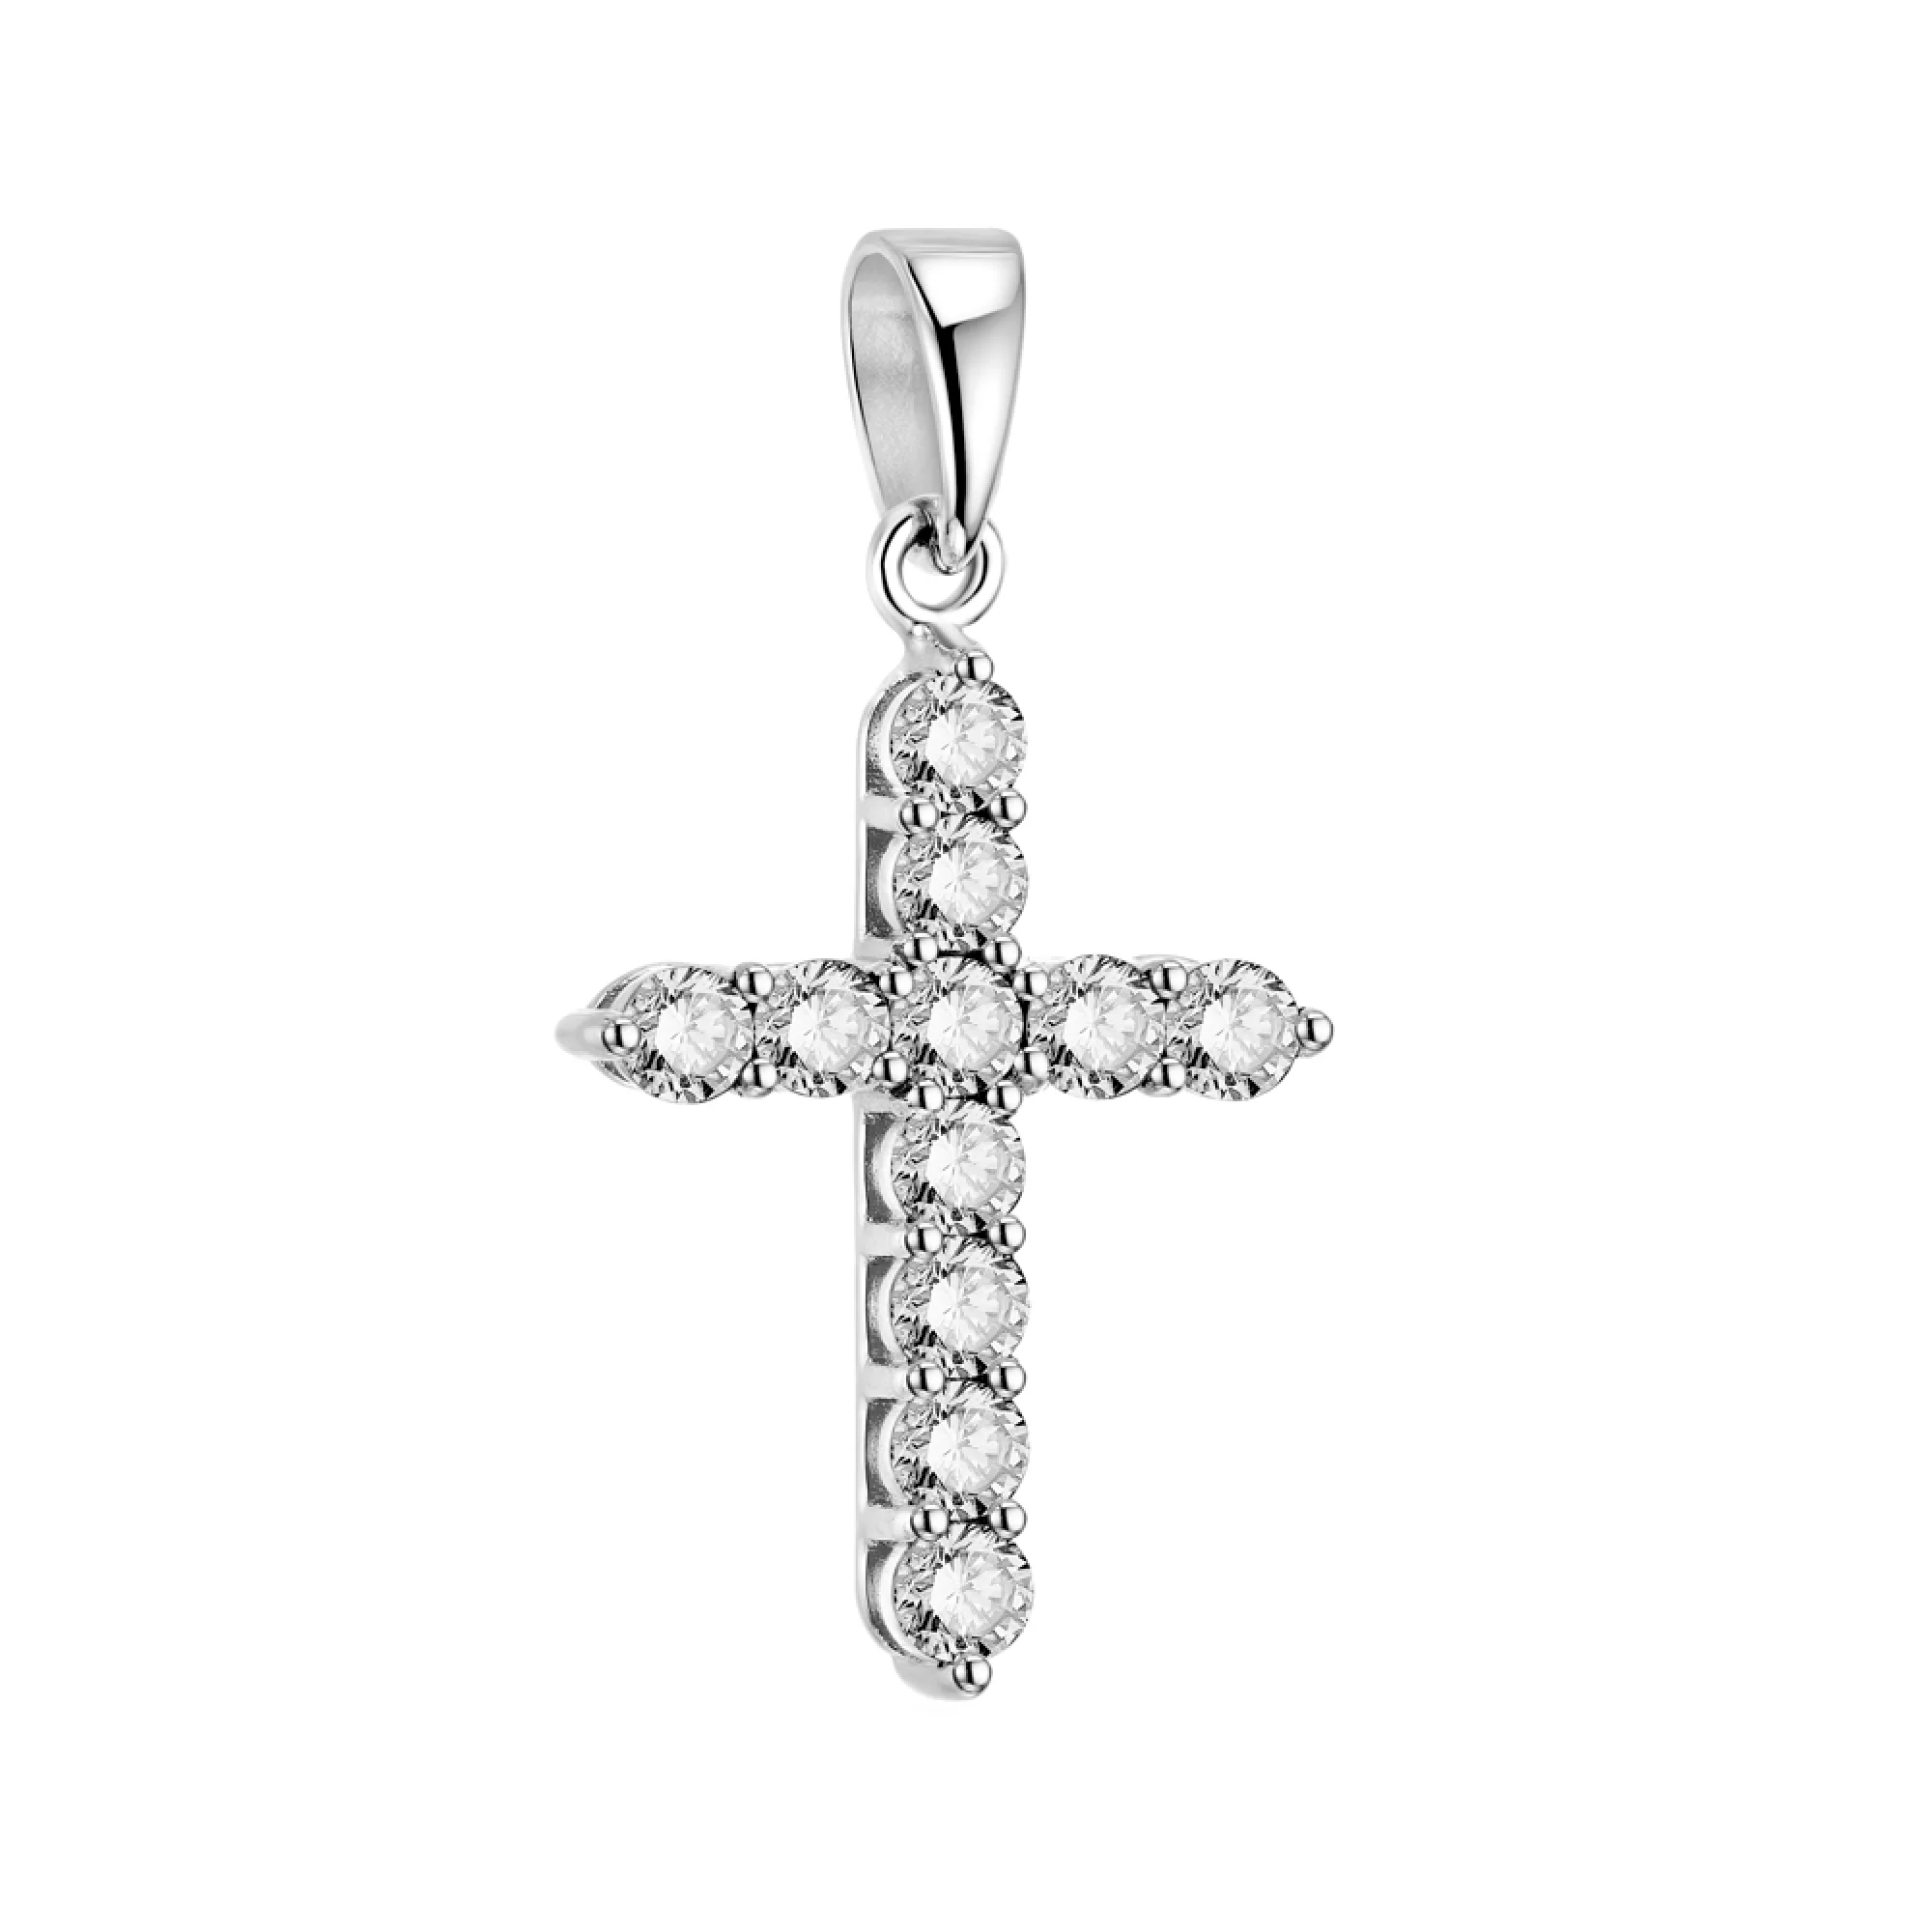 Крестик золотой с дорожкой бриллиантов - 1553963 – изображение 1